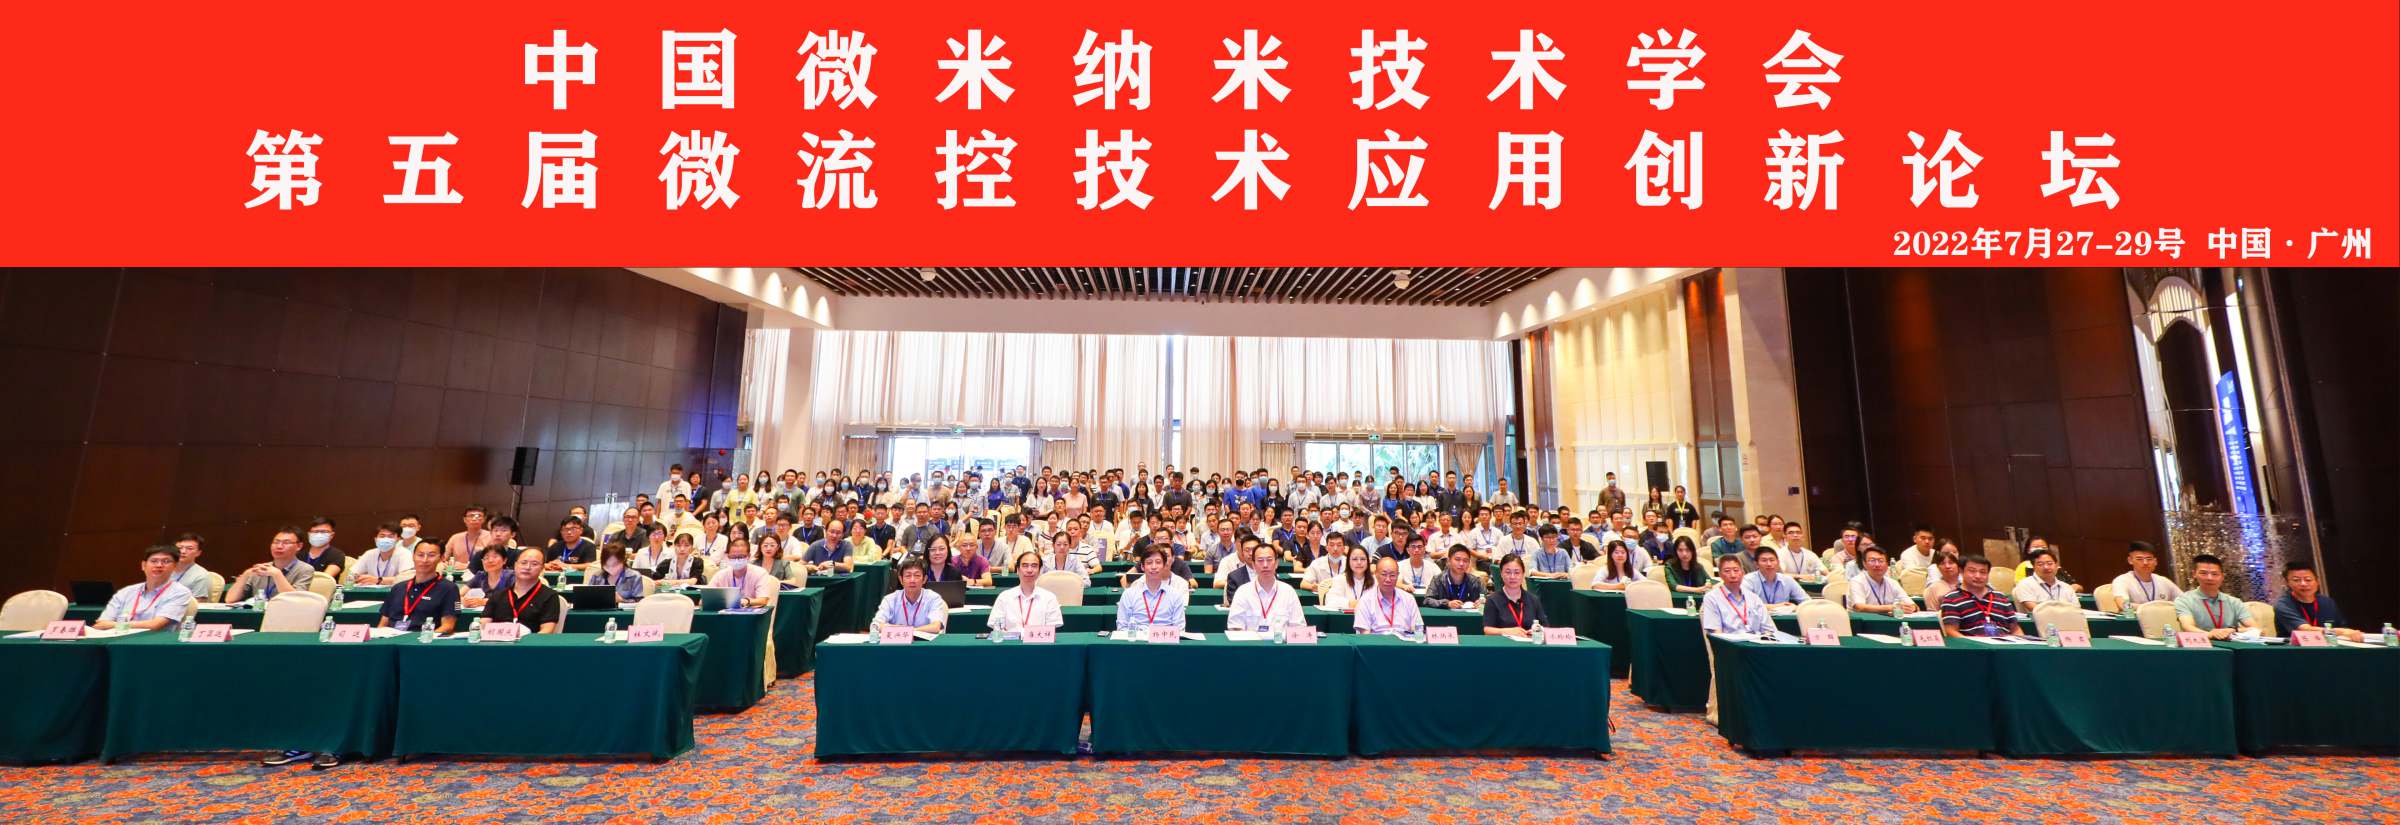 中国微米纳米技术学会第五届微流控技术应用创新论坛